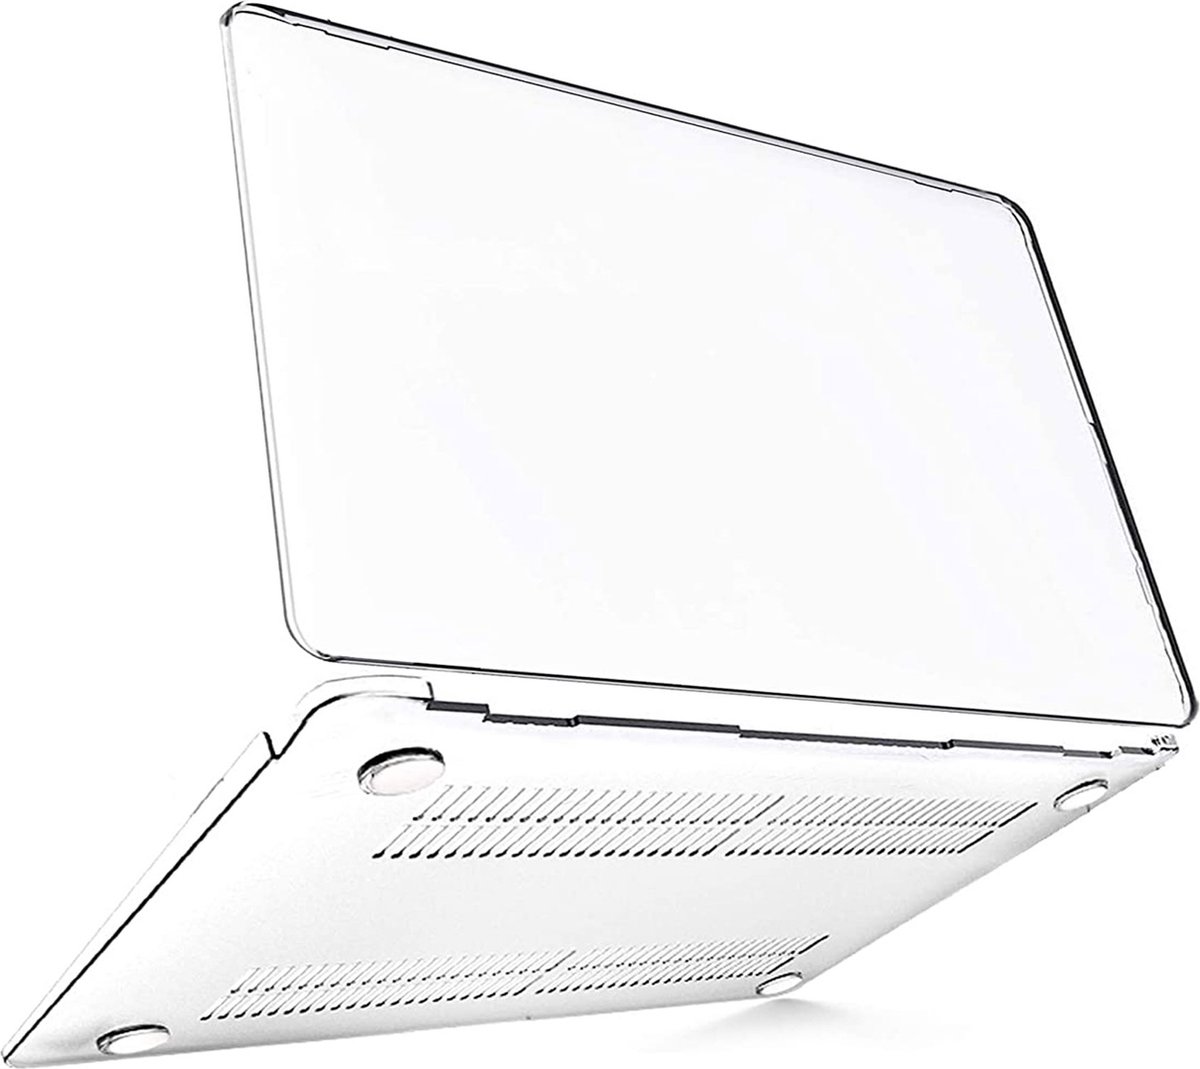 Macbook Air Cover - Hoesje voor Macbook Air 13 inch 2010 / 2017 - Hardcase Transparant